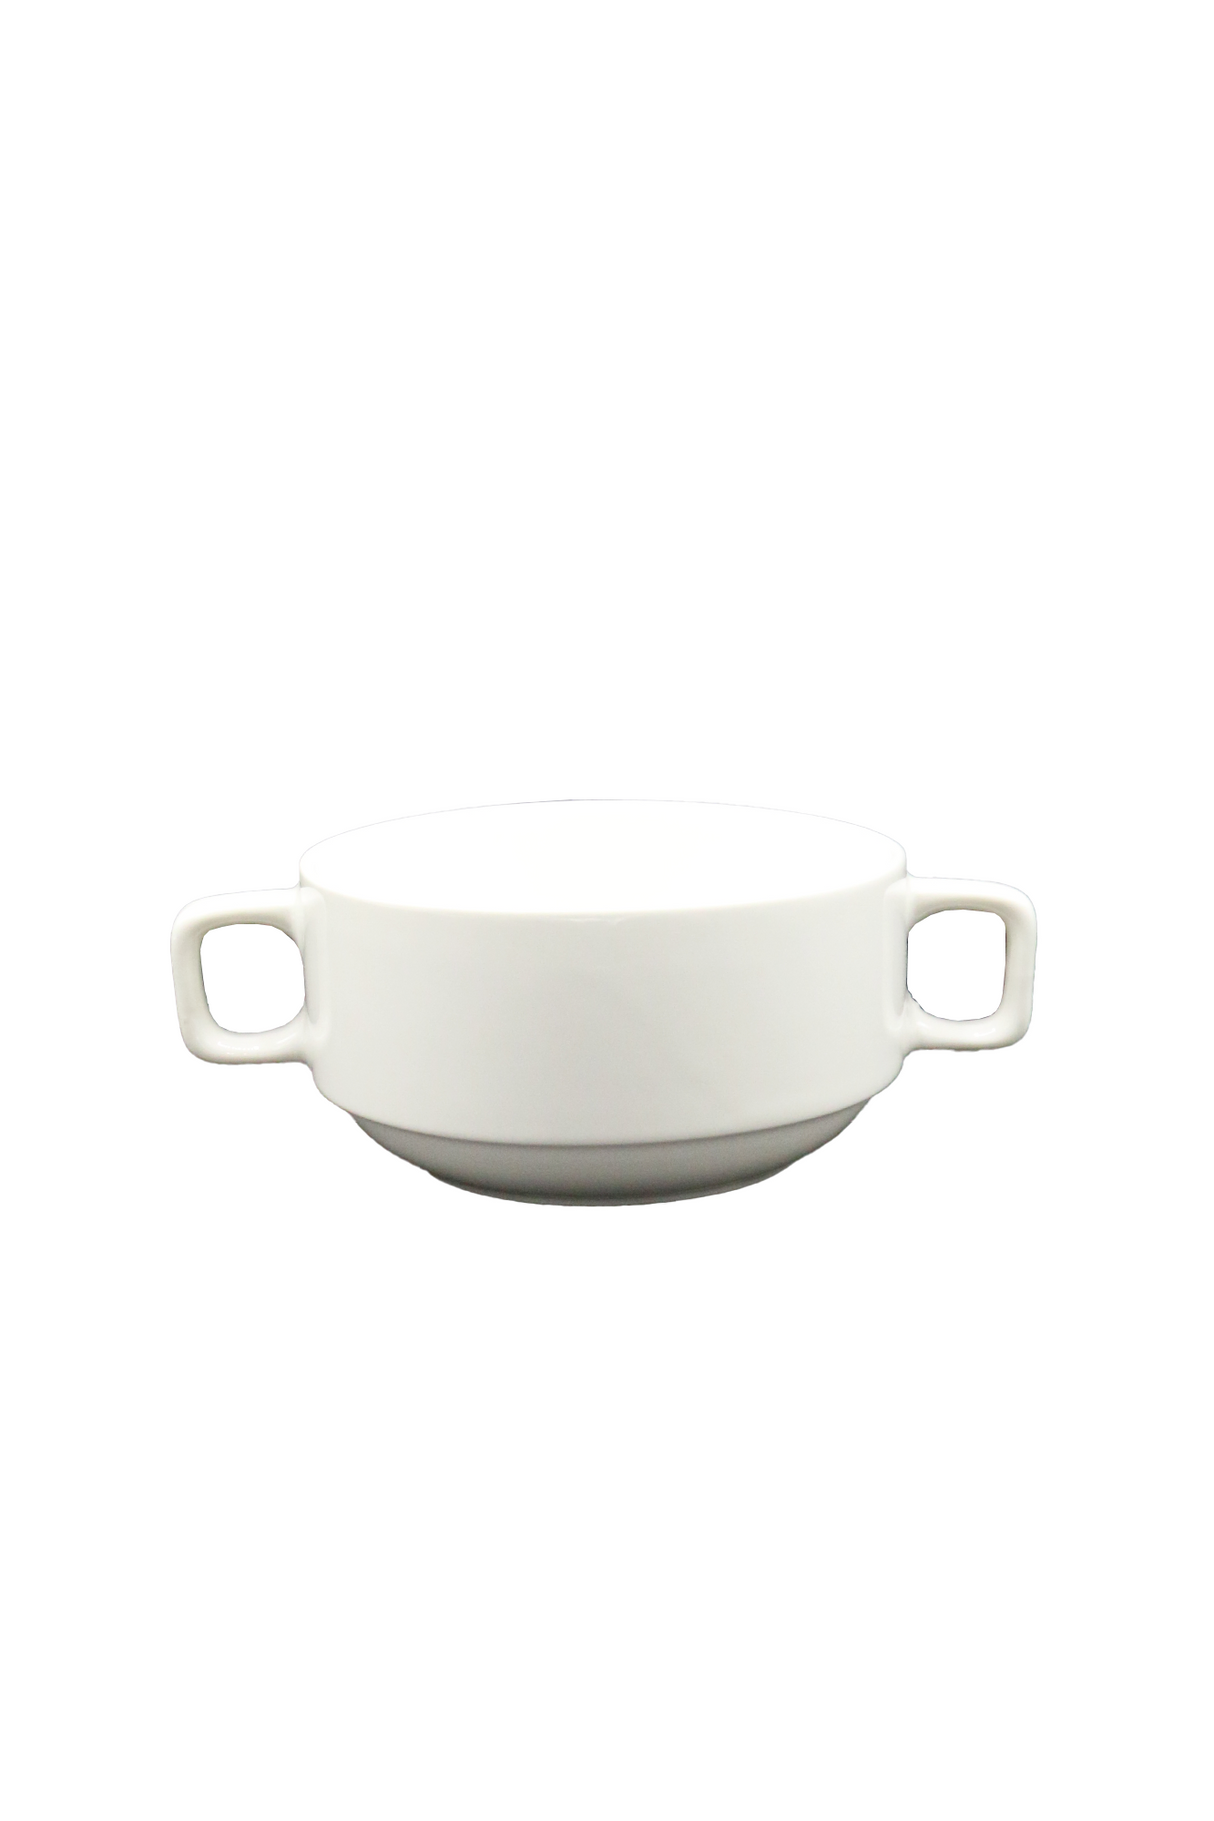 soup bowl handle